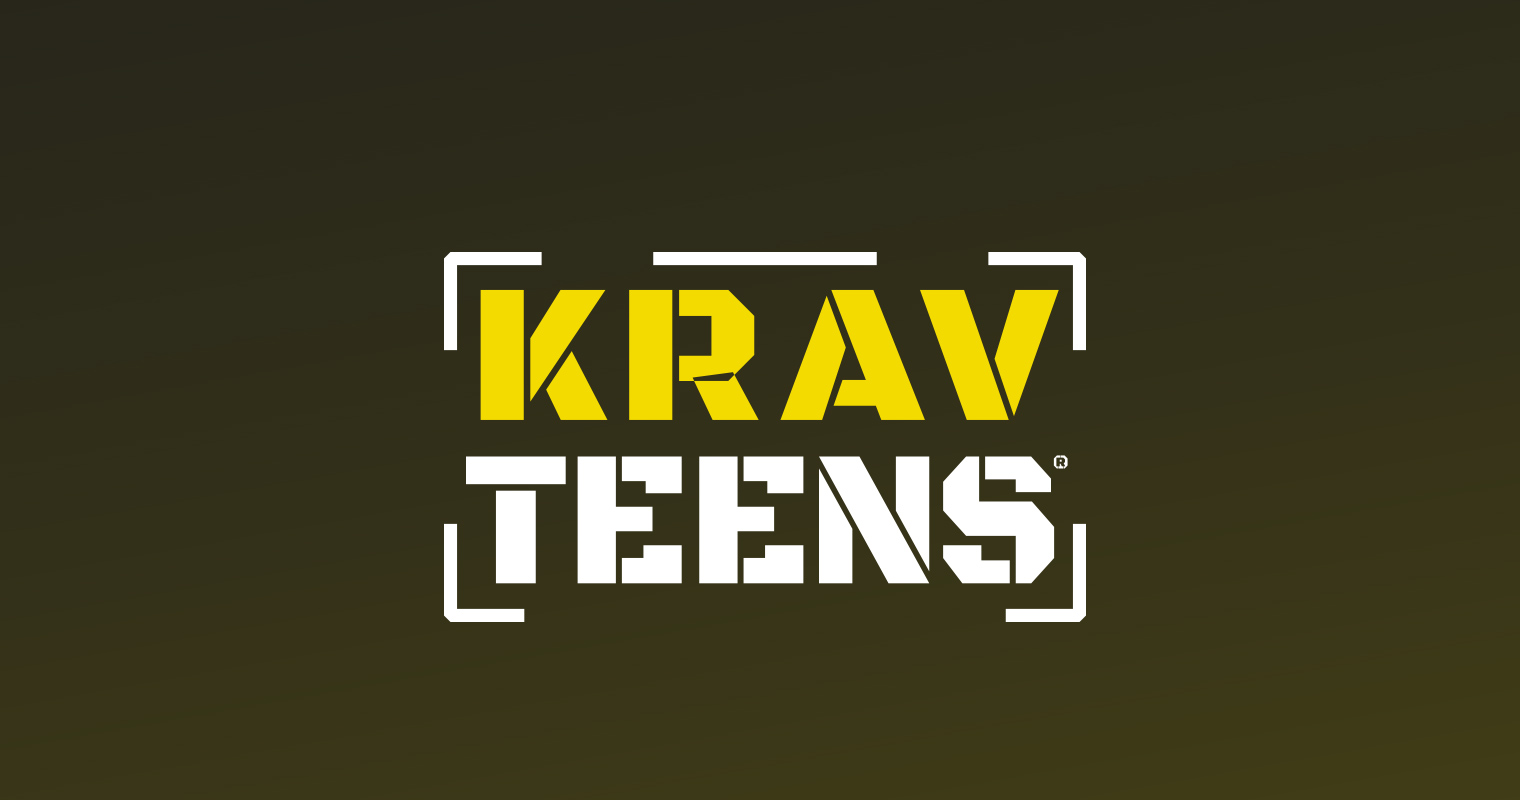 Krav Teens